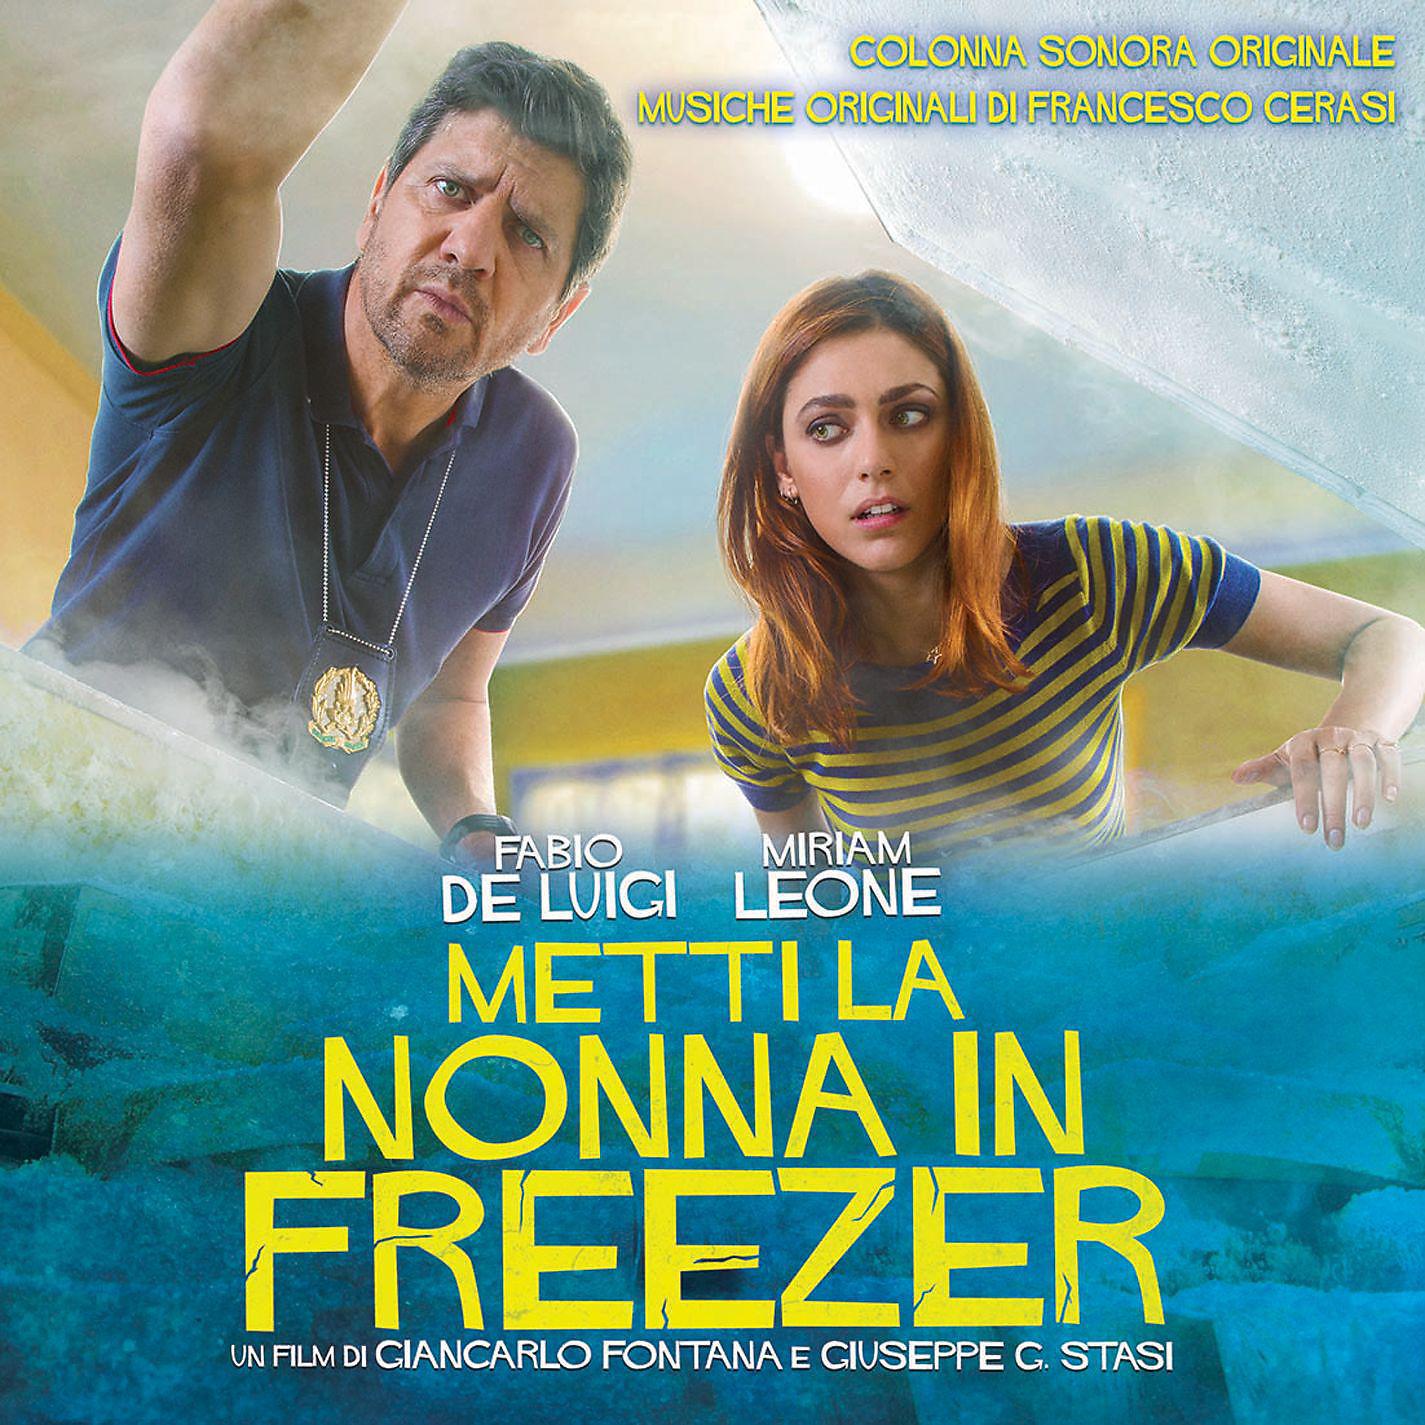 Постер альбома Metti la nonna in freezer (Colonna Sonora Originale di Francesco Cerasi)